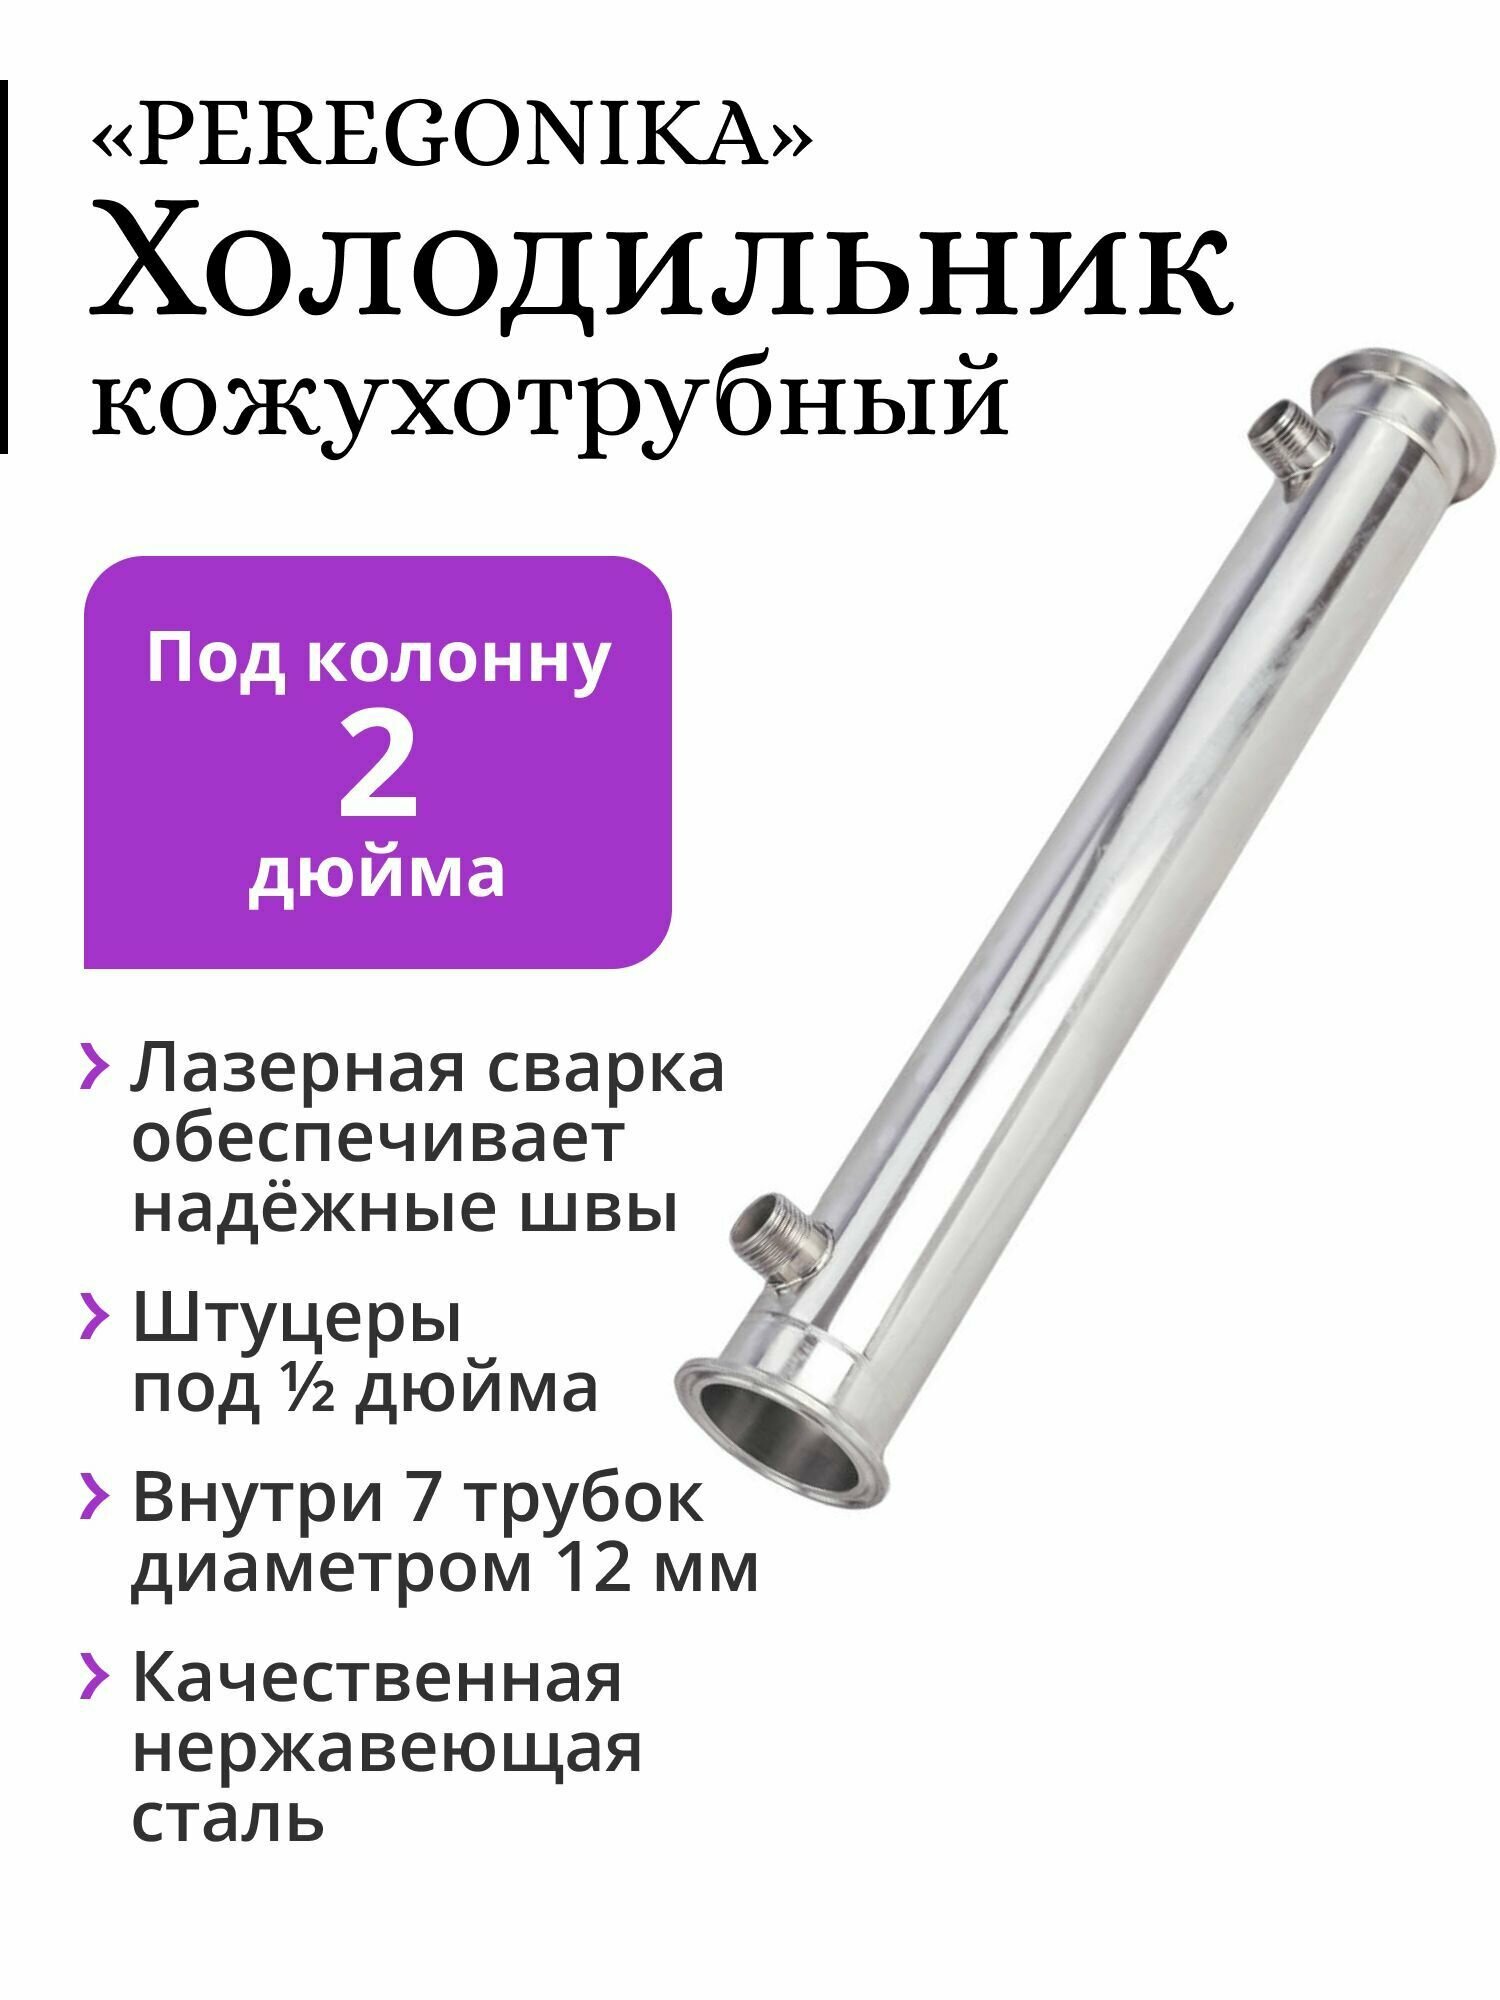 Холодильник PEREGONIKA, кожухотрубный, для колонны 2 дюйма, трубки 7х12 мм